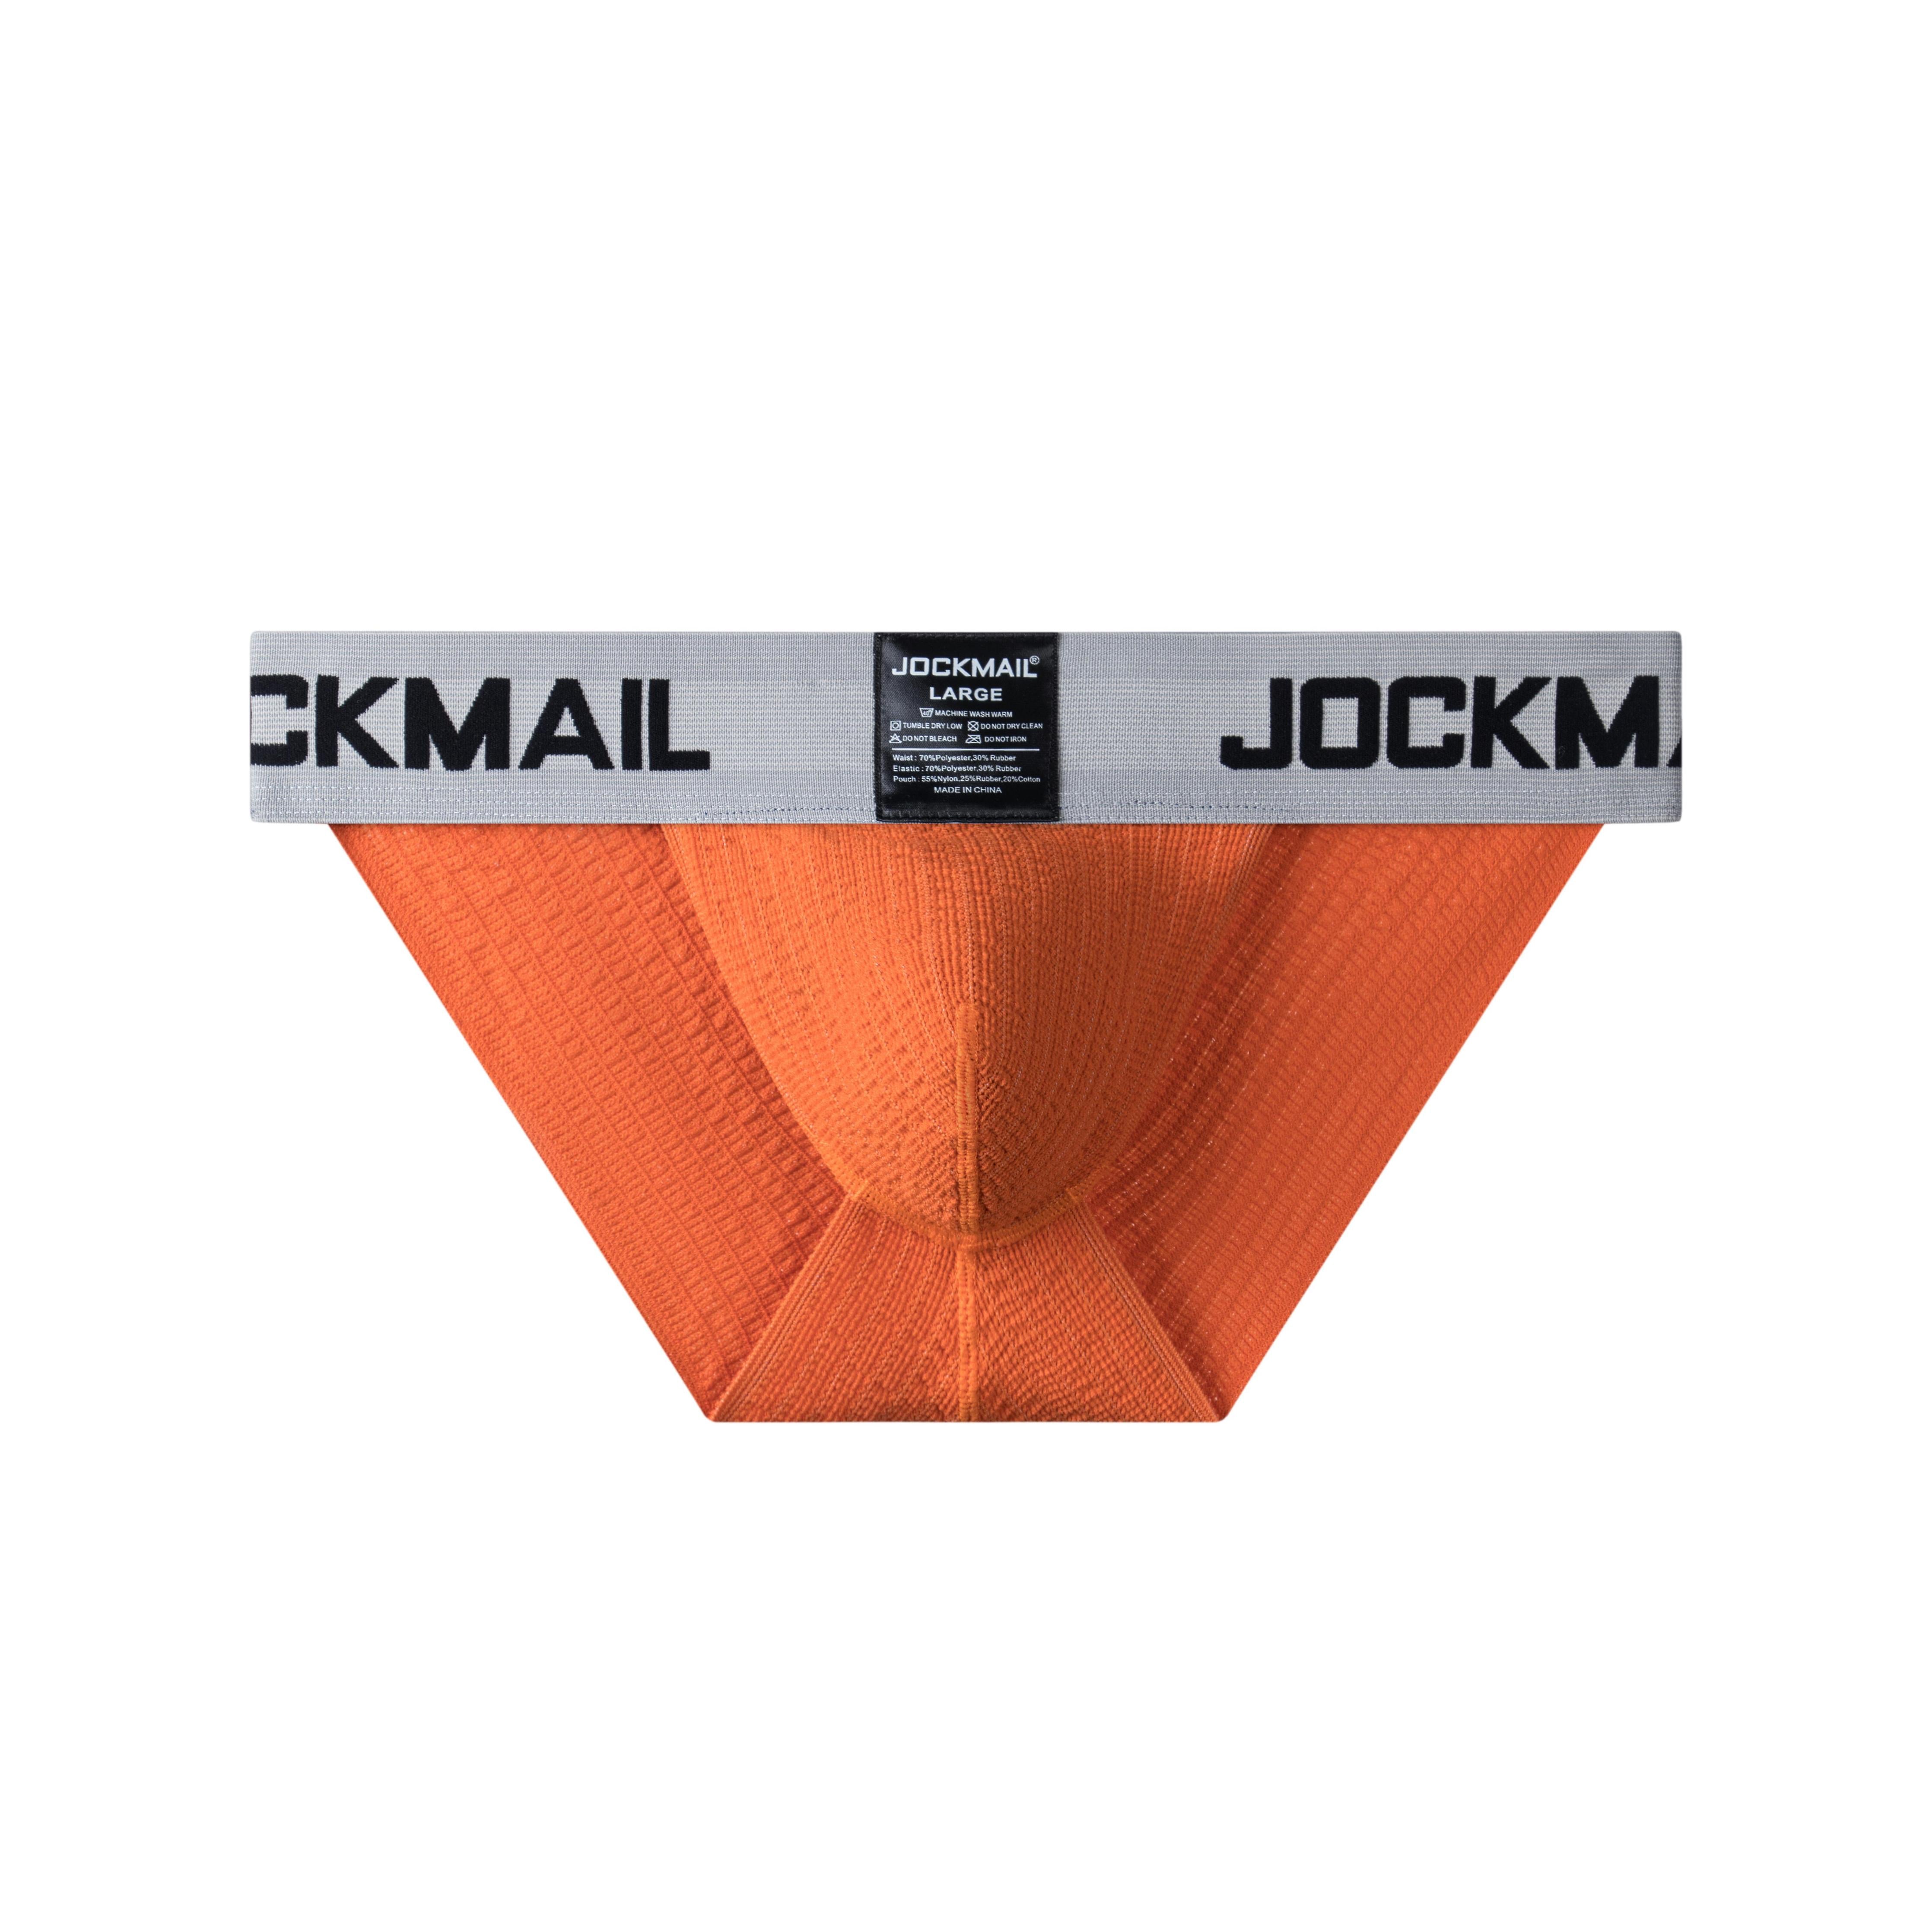 Men's JOCKMAIL JM379 - Old School Brief - JOCKMAIL